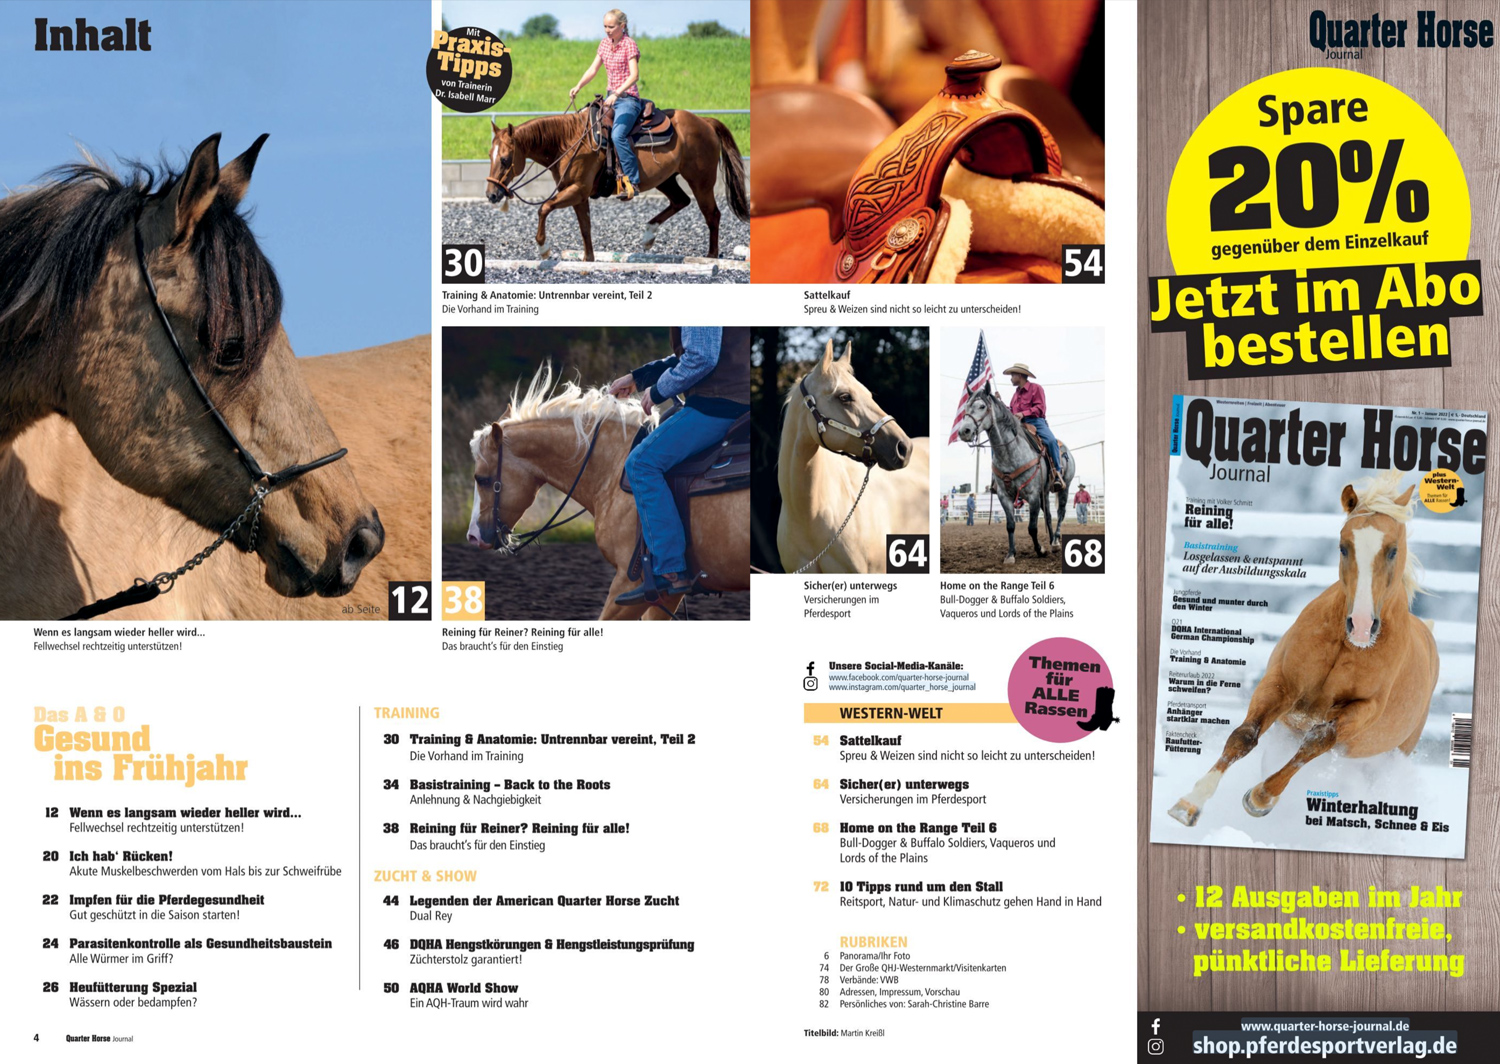 Quarter Horse Journal 02/2022 › Pferdesport Verlag Ehlers